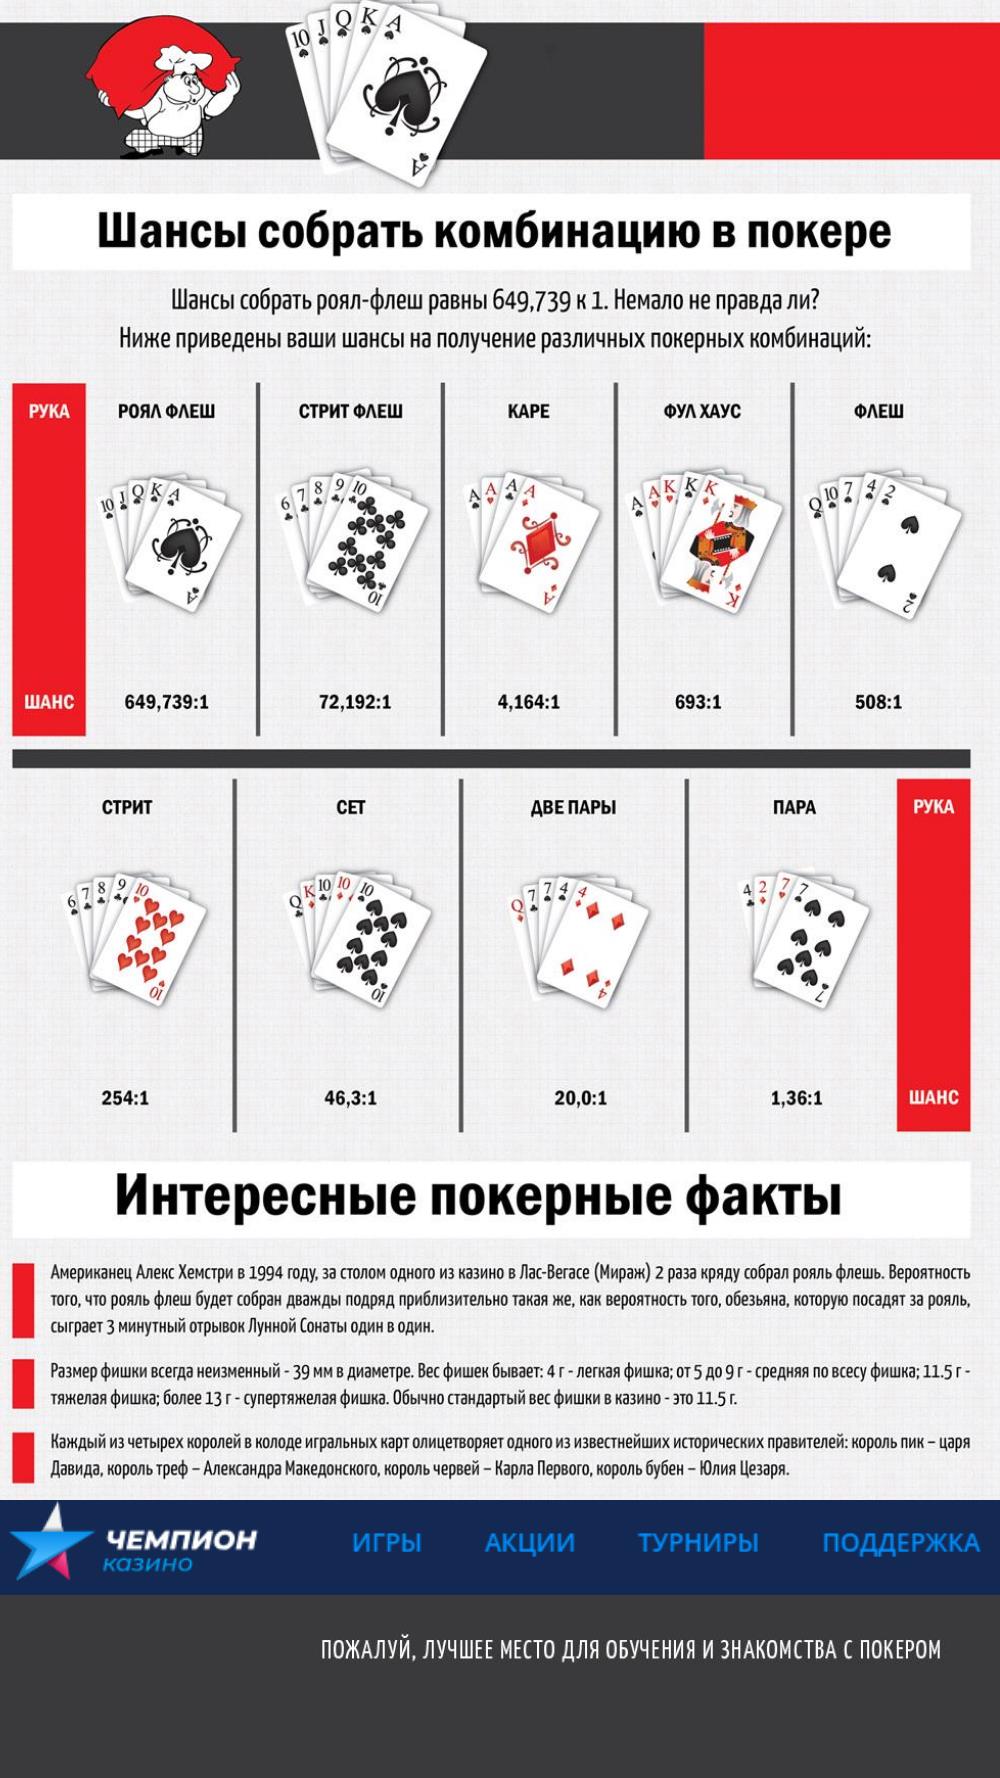 Правила покера в казино россия зал игровых автоматов бонус slots горки